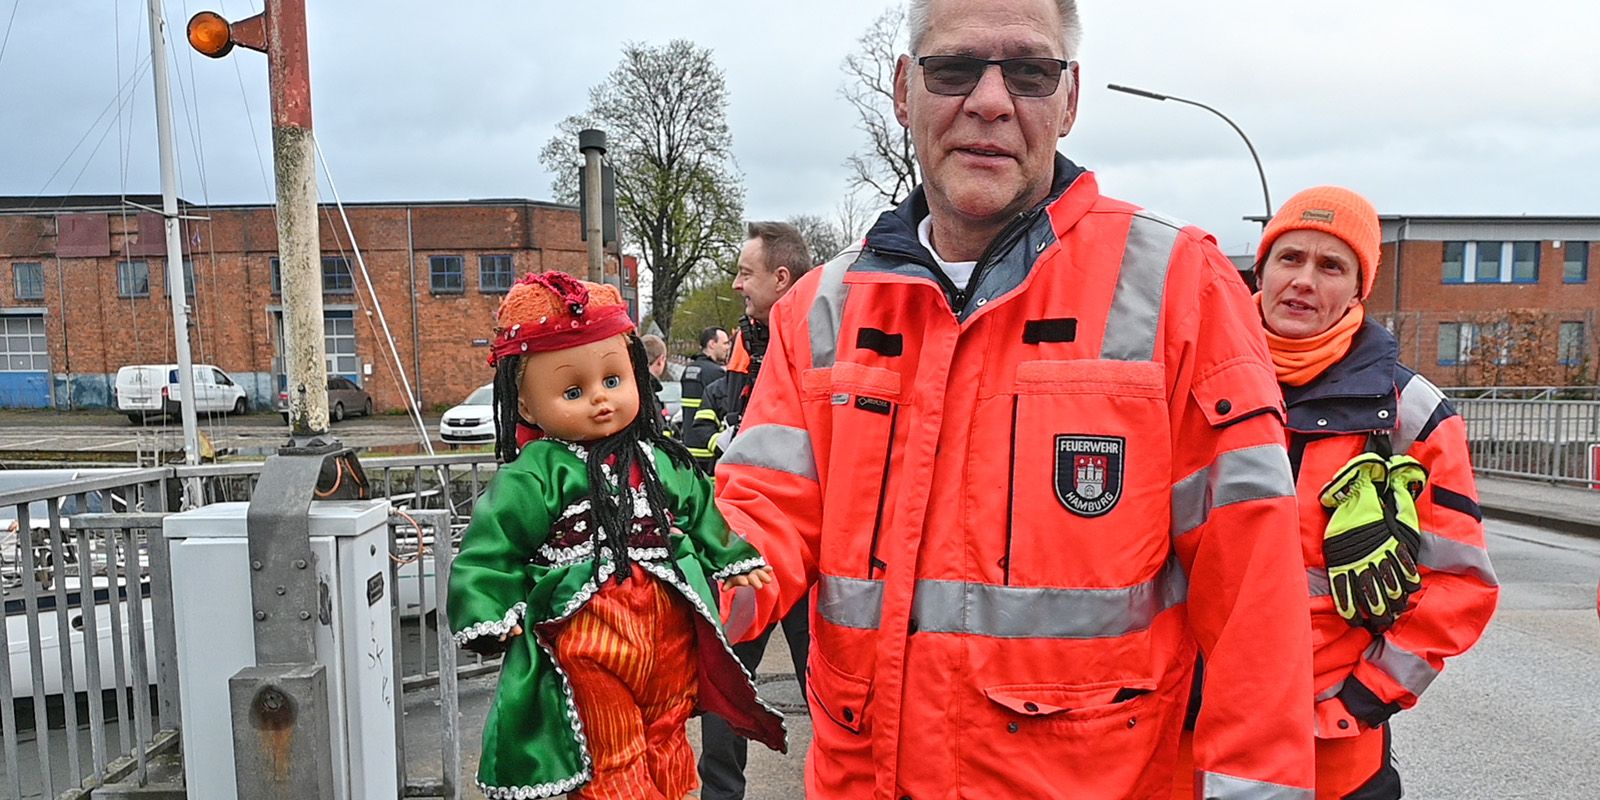 Wenig amüsiert ein Feuerwehrmann mit der Puppe. Foto: Lenthe-Medien